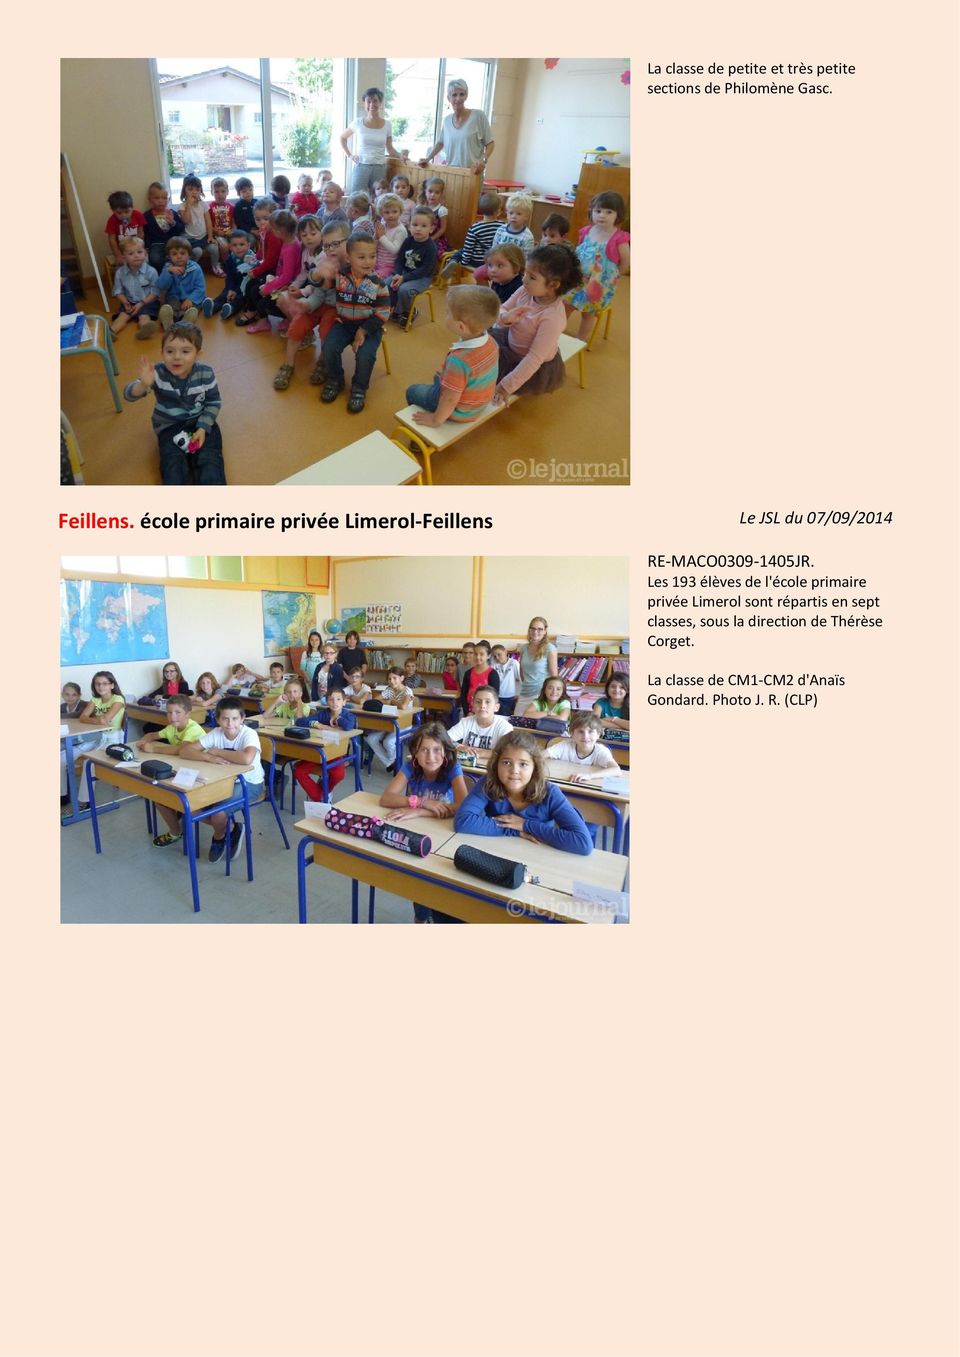 Les 193 élèves de l'école primaire privée Limerol sont répartis en sept classes,